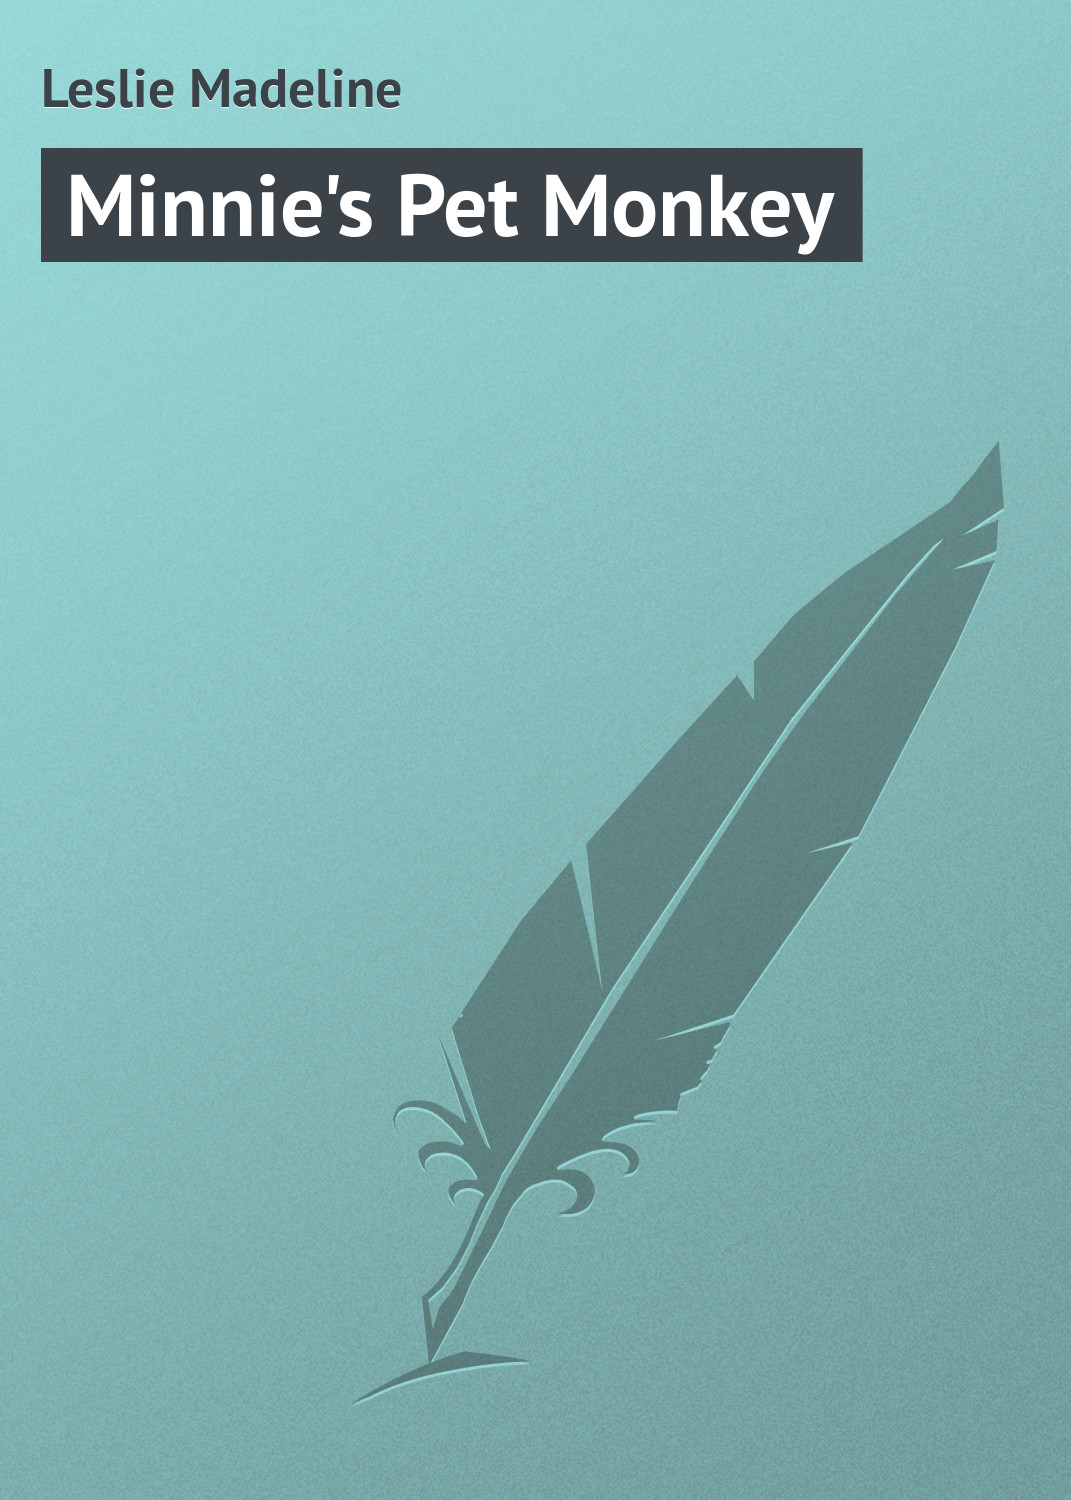 Книга Minnie's Pet Monkey из серии , созданная Madeline Leslie, может относится к жанру Зарубежные детские книги, Зарубежная классика, Иностранные языки. Стоимость электронной книги Minnie's Pet Monkey с идентификатором 23167115 составляет 5.99 руб.